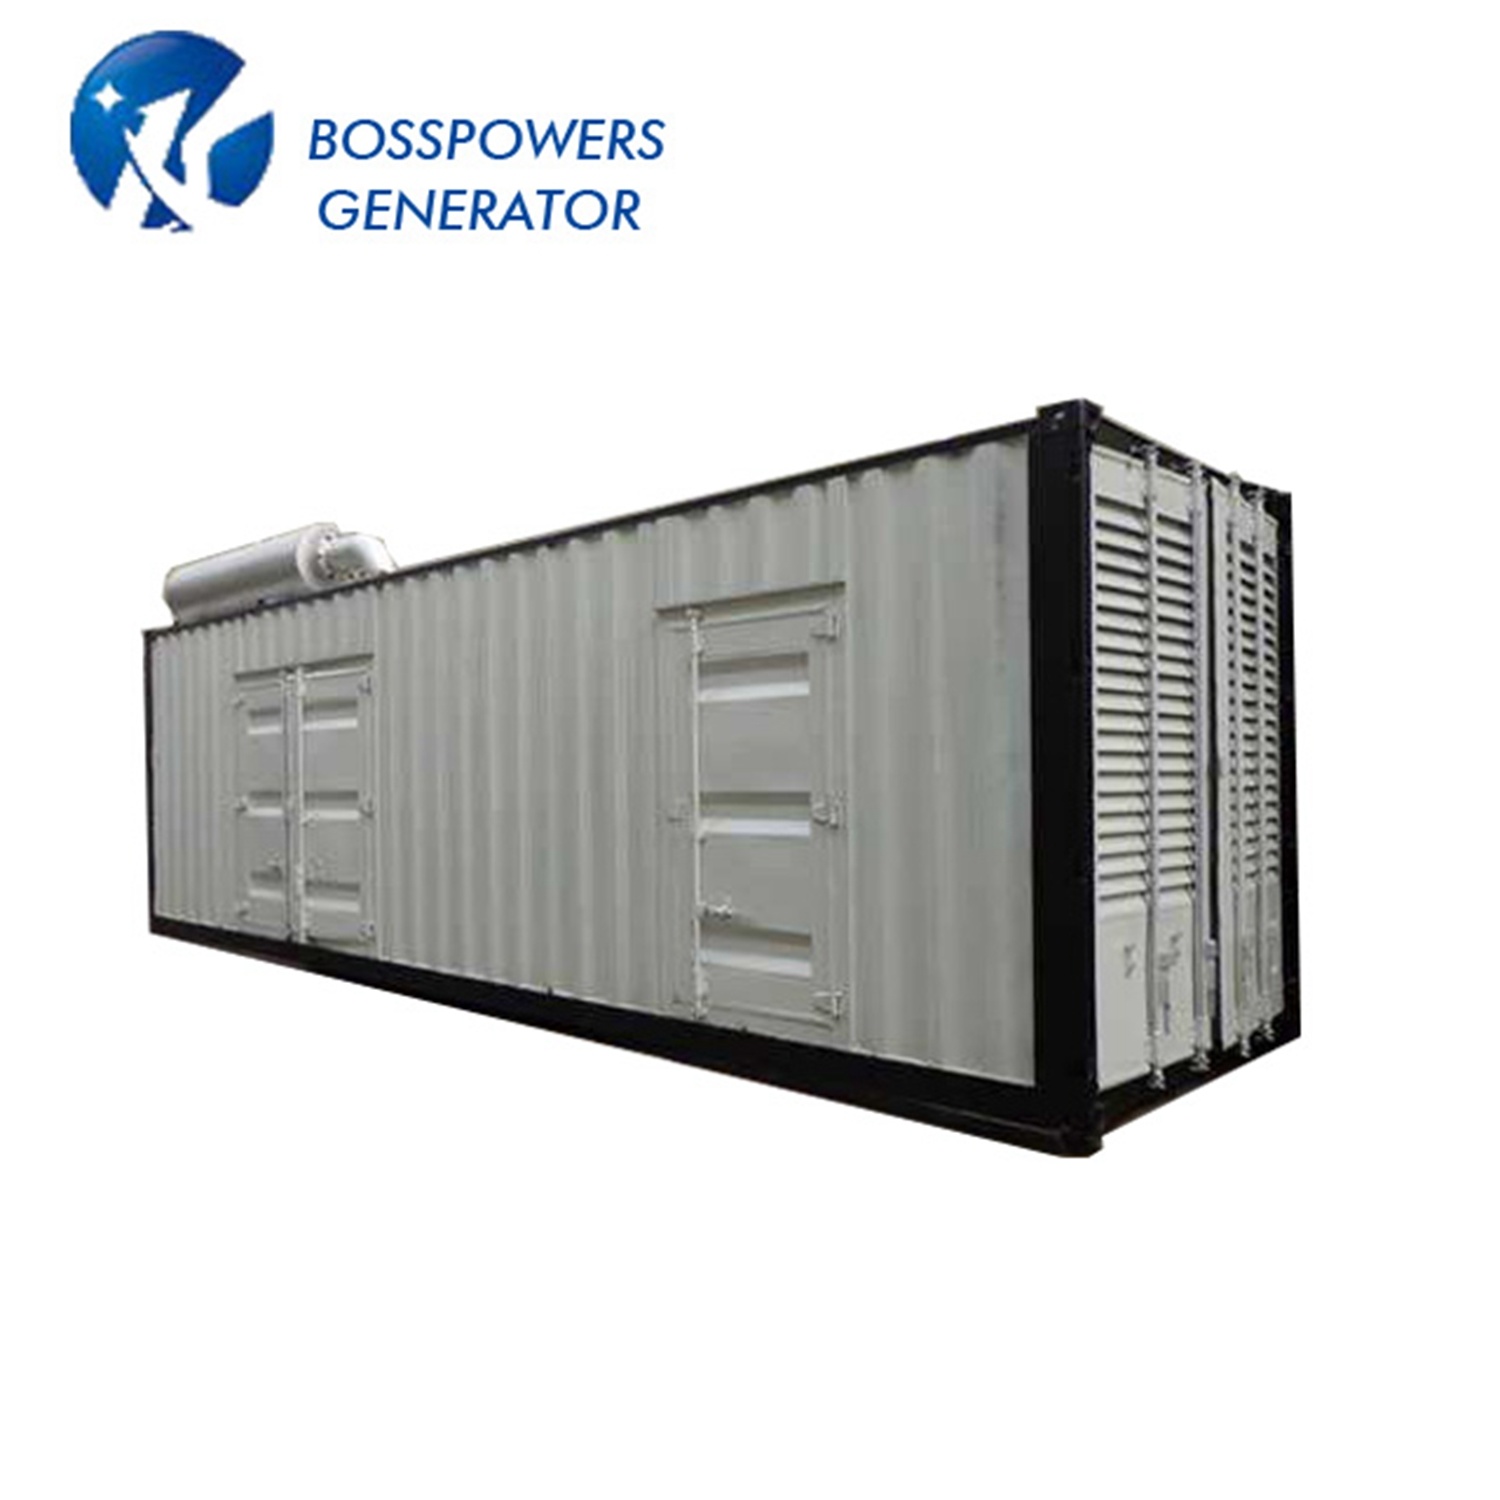 Prime Power 1800kw 2250kVA Diesel Generator Set Powered by Qsk60-G21